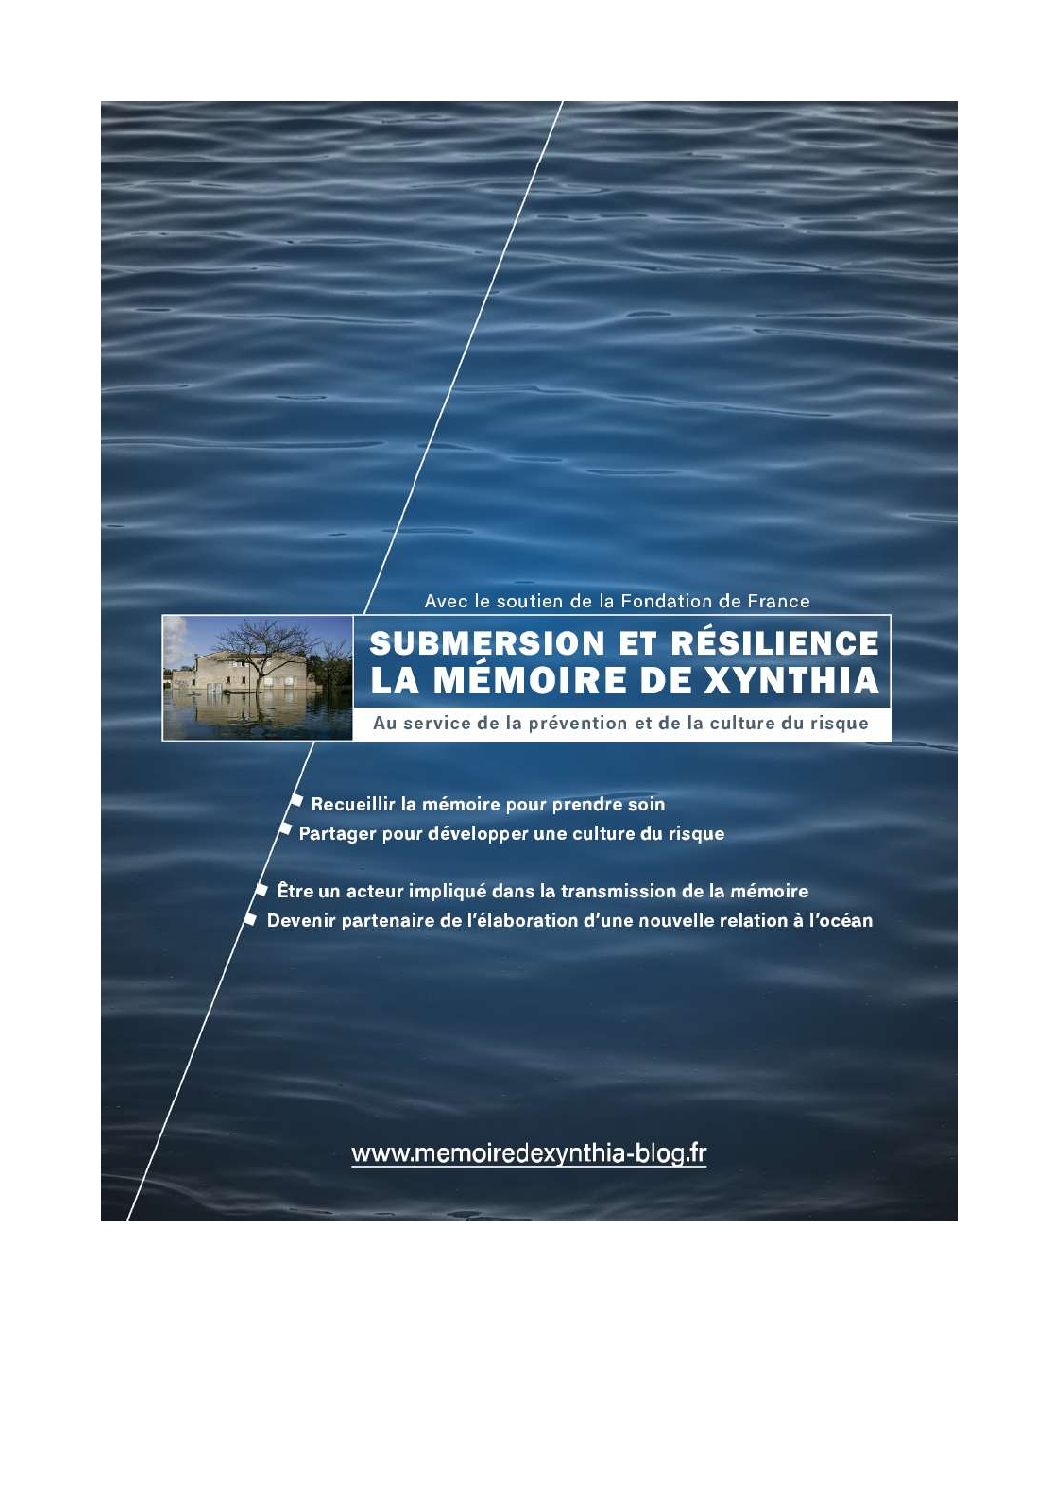 Projet « Submersion et résilience, la mémoire de Xynthia »